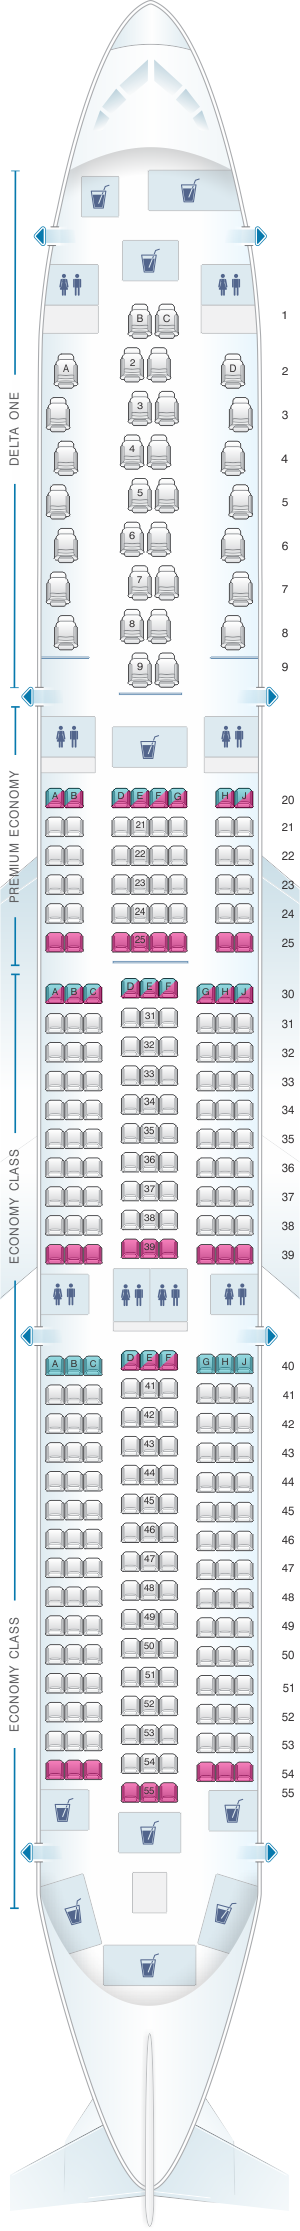 Plan de cabine Delta Air Lines Airbus A350 900 | SeatMaestro.fr